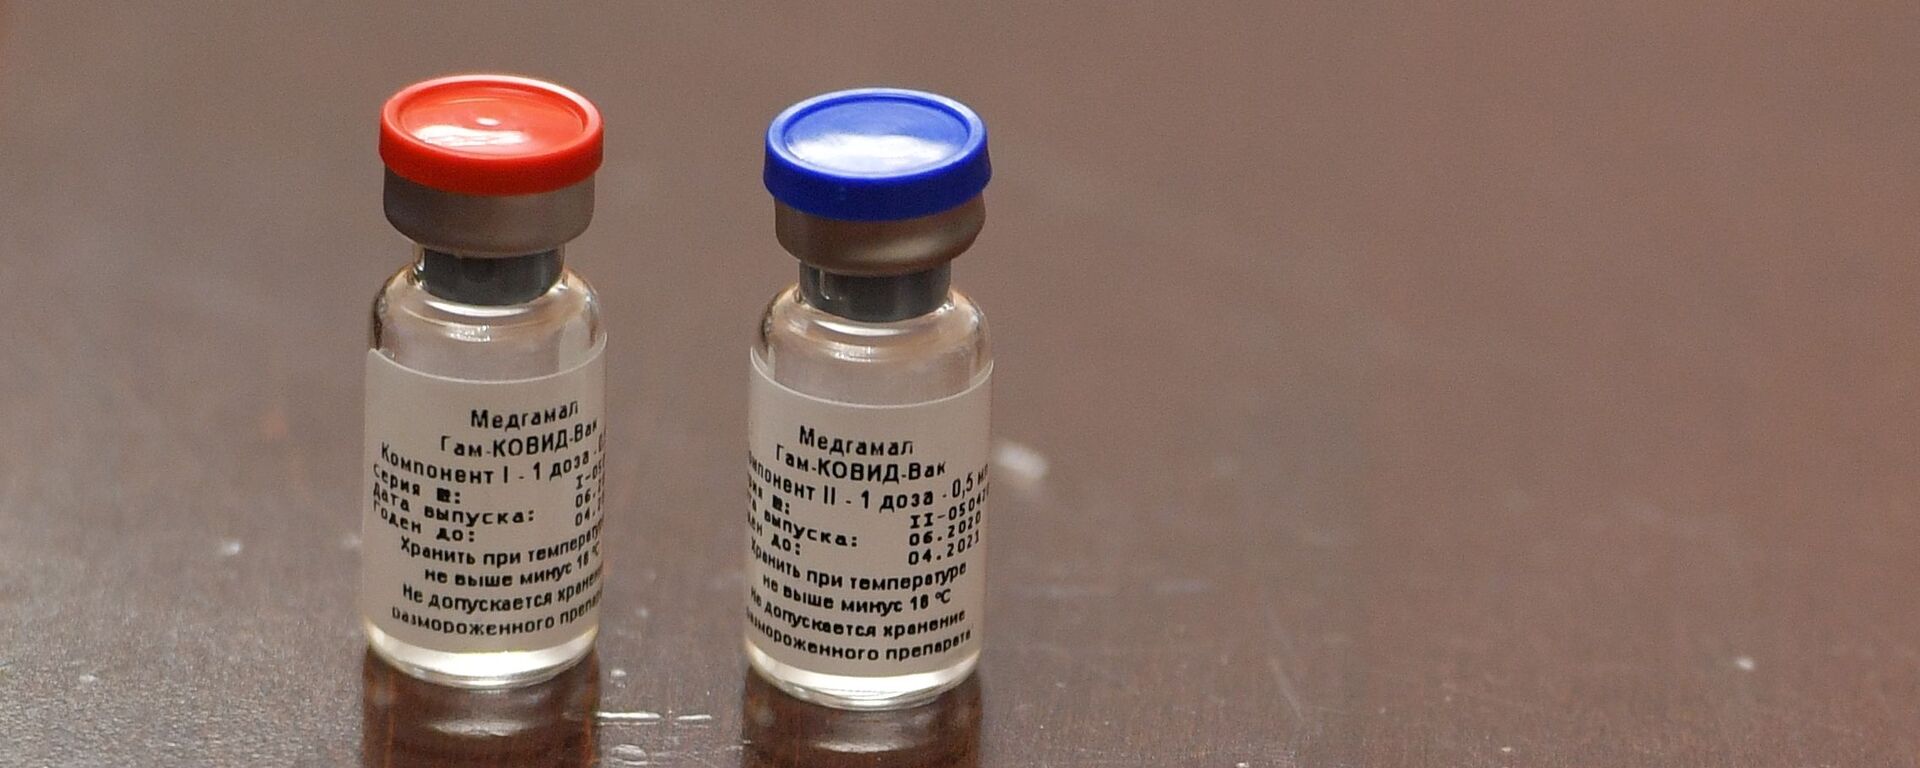 Брифинг, посвященный первой в мире зарегистрированной вакцине от COVID-19 - Sputnik Армения, 1920, 11.12.2020